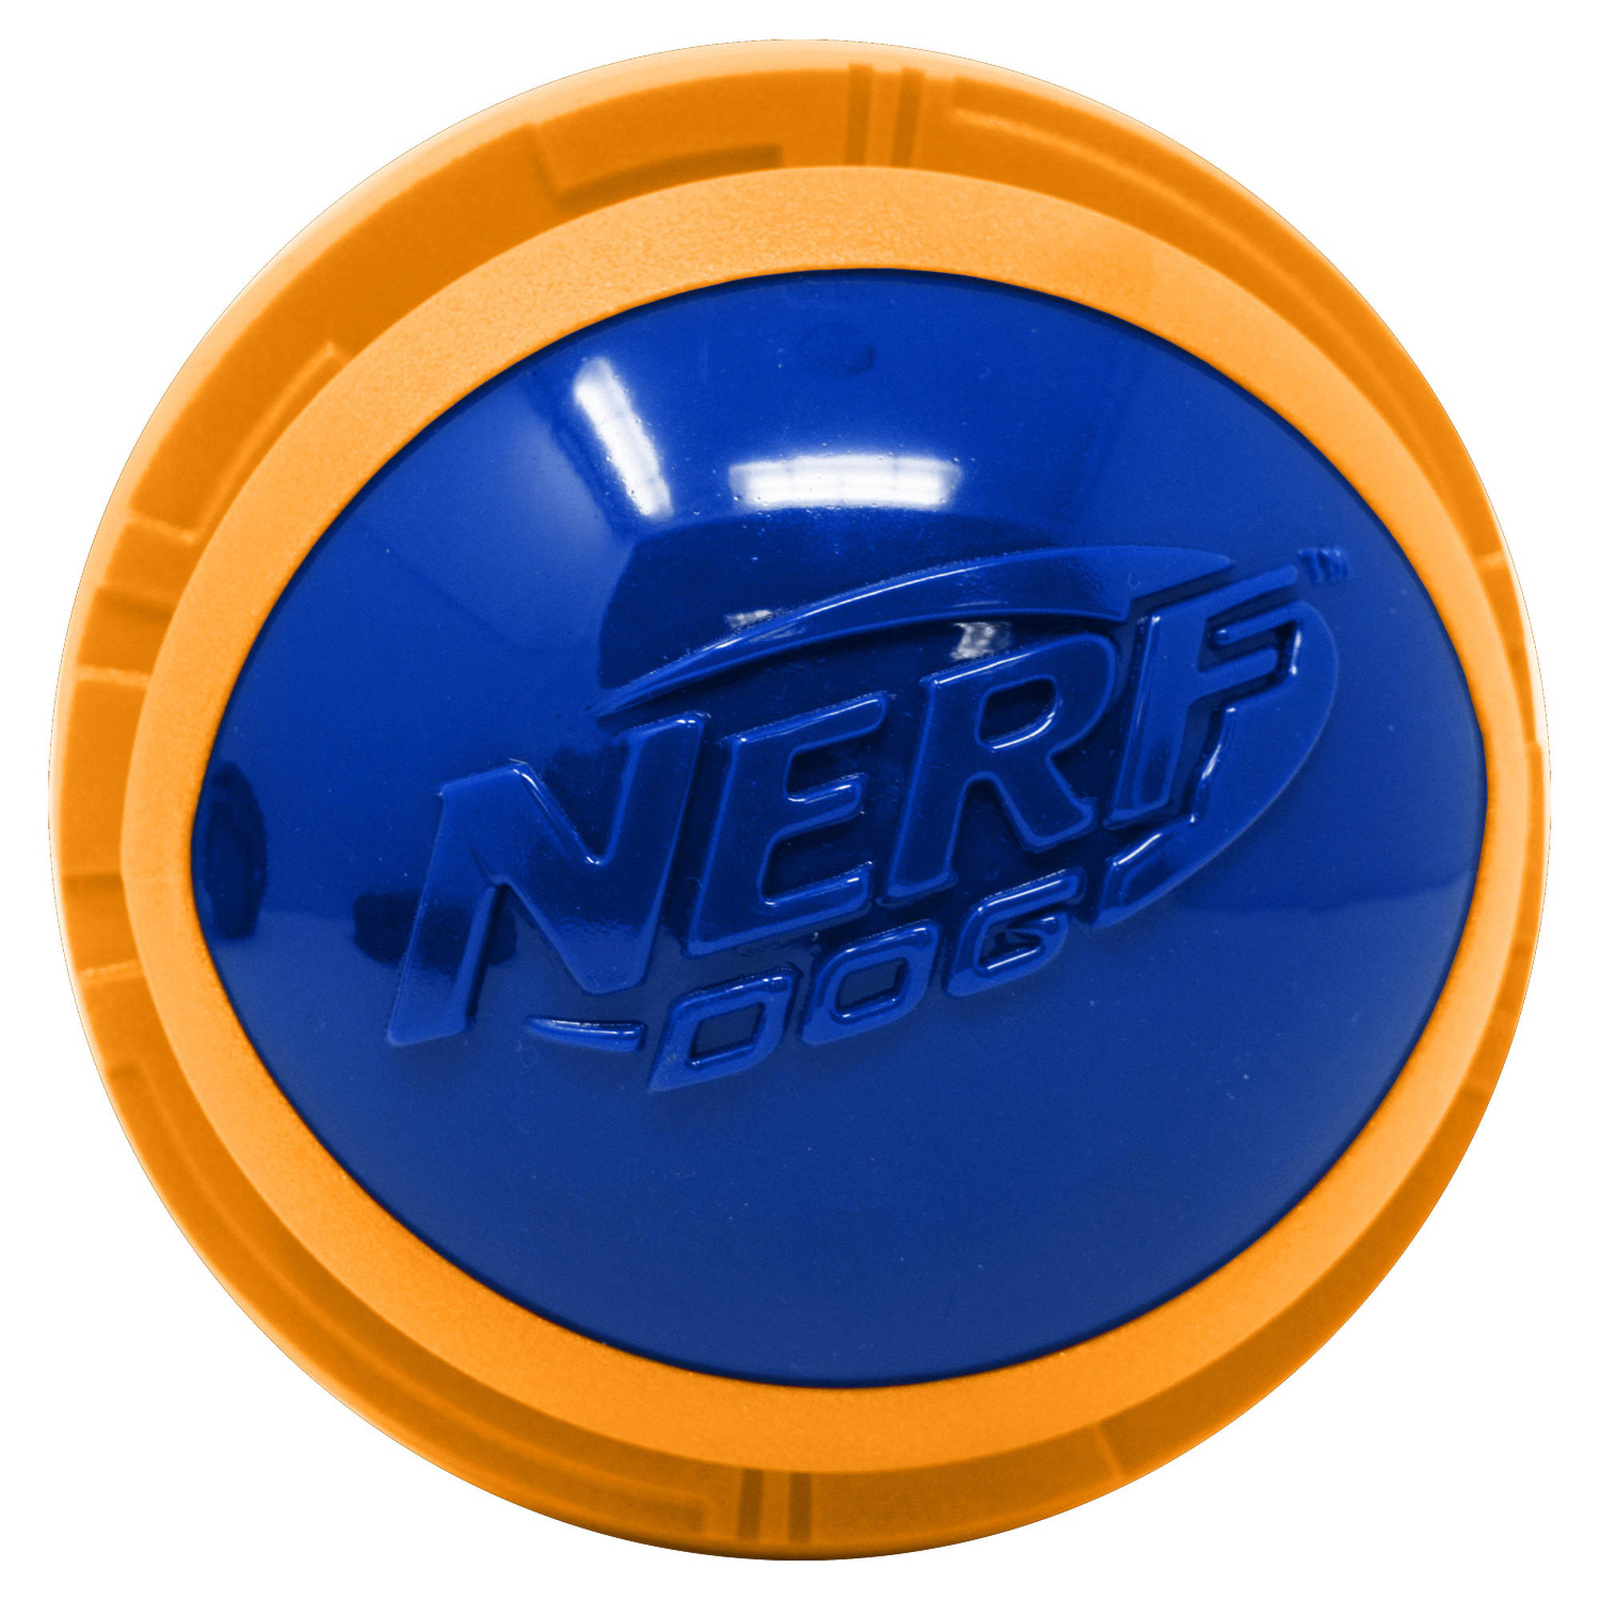 Nerf Nerf мяч из вспененной резины и термопластичной резины, 10 см (серия Мегатон), (синий/оранжевый) (380 г) nerf dog мяч для регби из термопластичной резины 18 см серия мегатон синий оранжевый